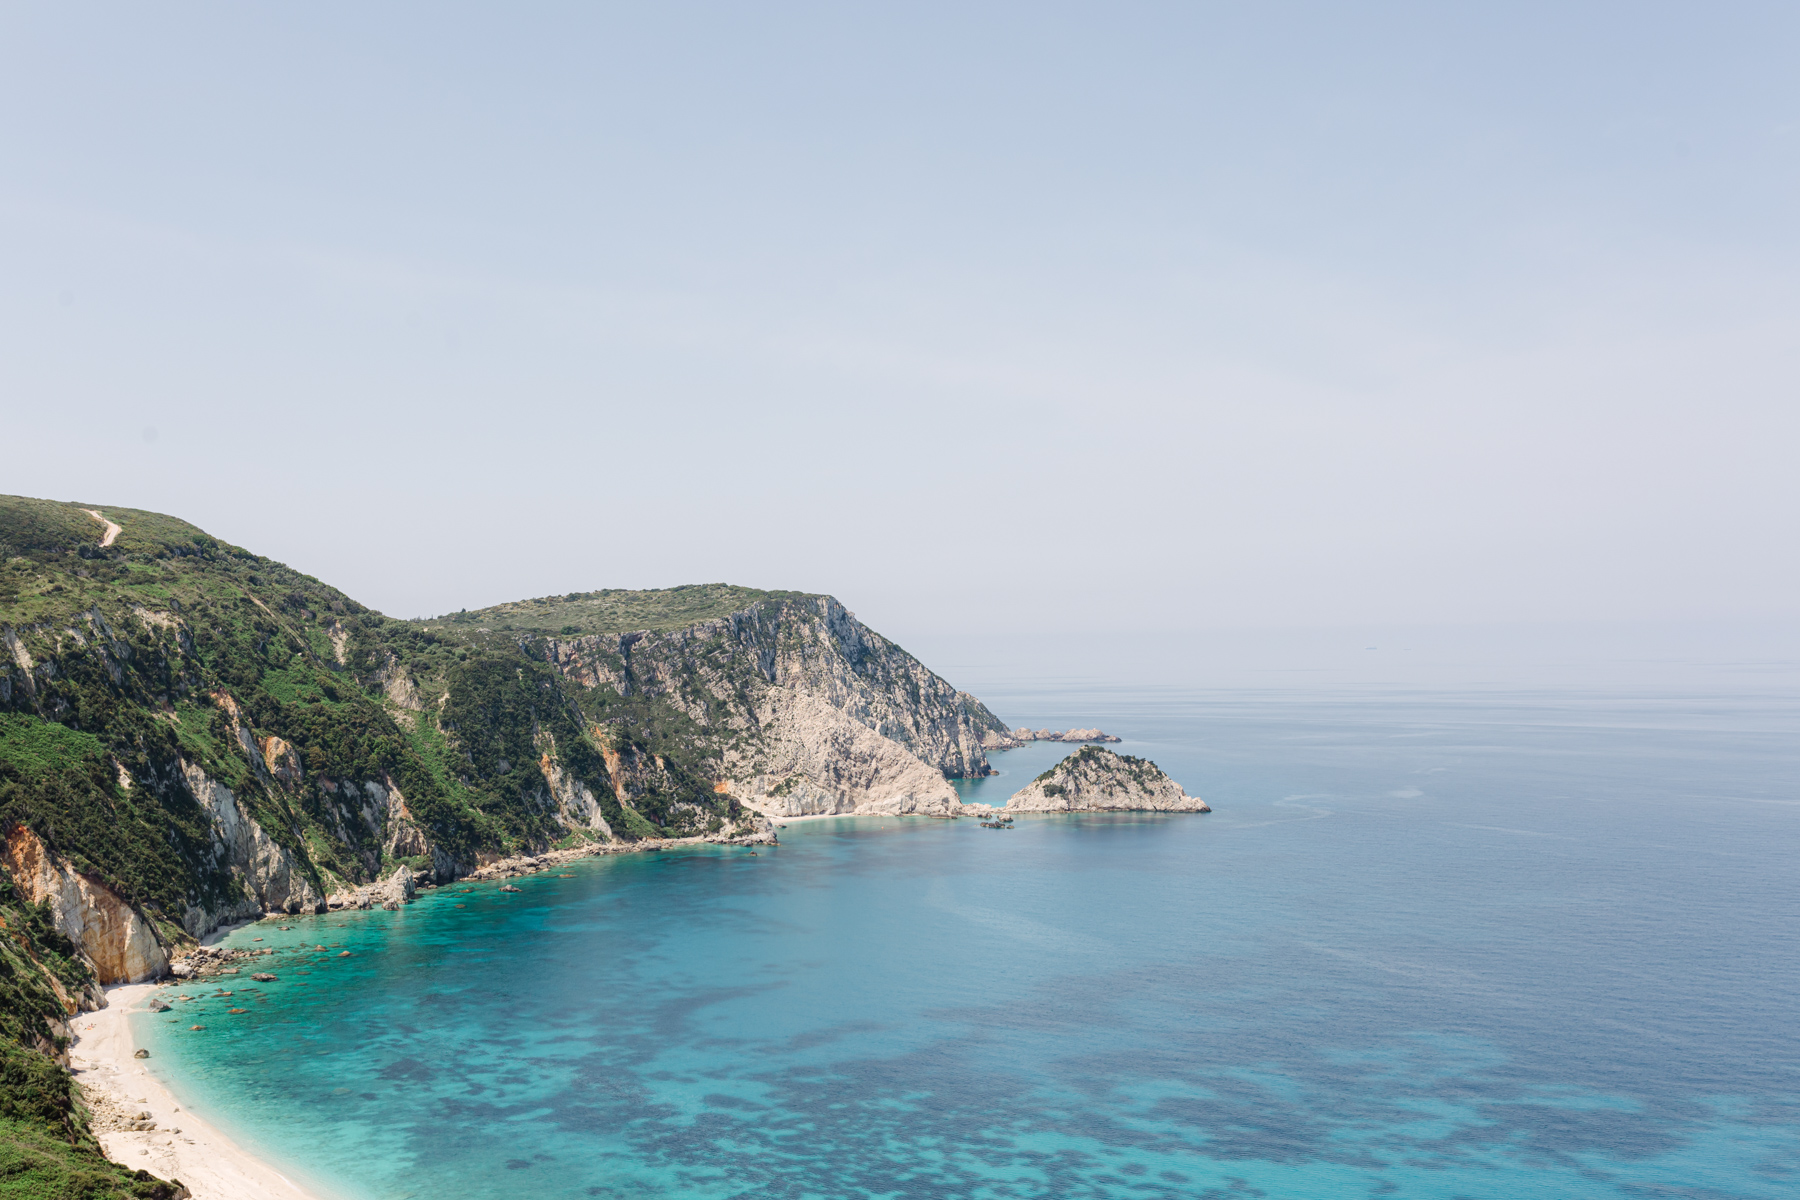 blick von oben auf eine Bucht mit weißem Sand und türkisem Meer, umrahmt von grün bewachsenen Felsen